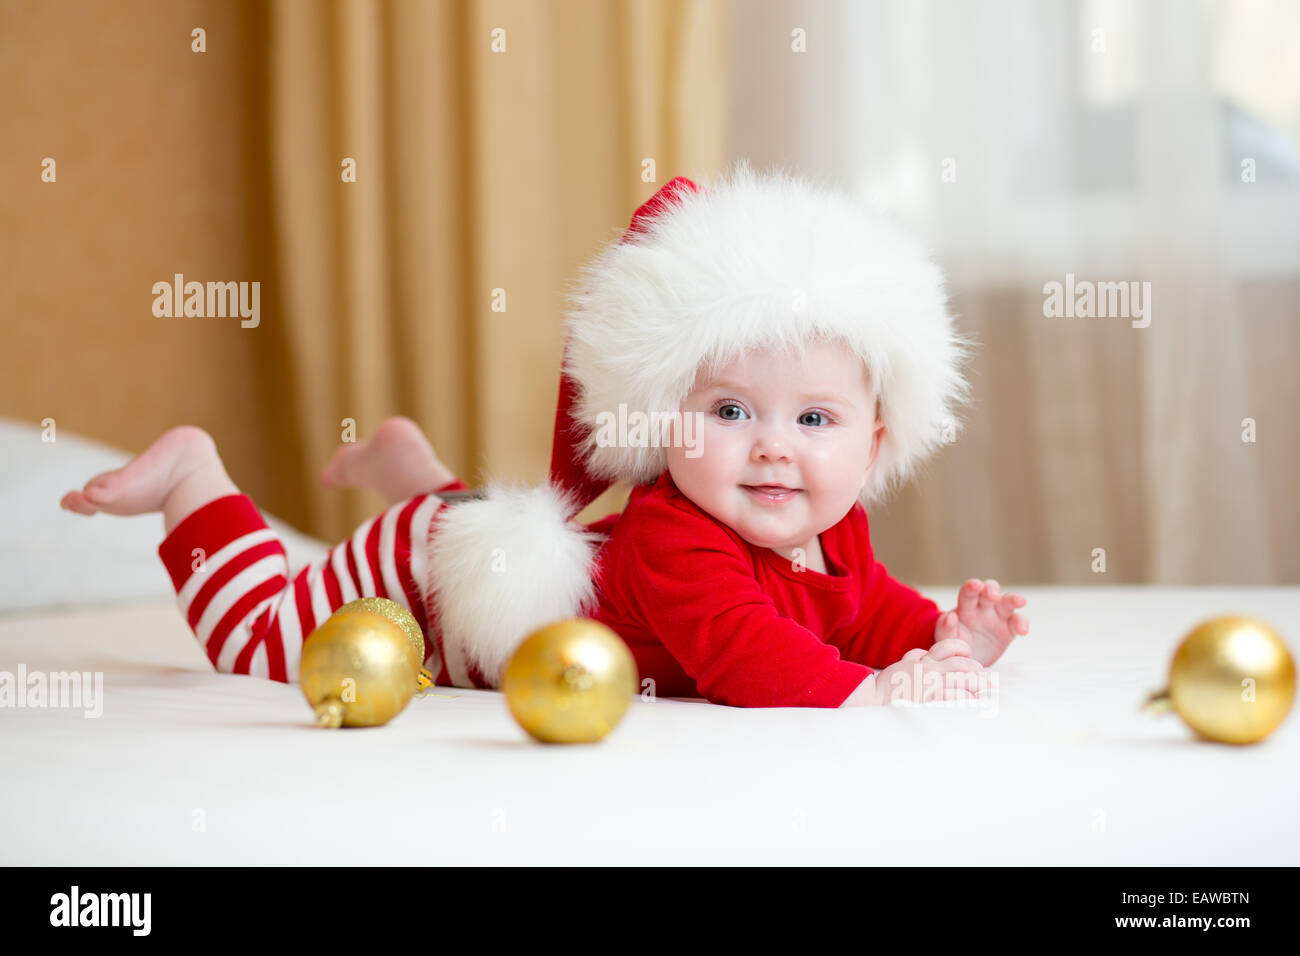 Cute Baby Mädchen weared Weihnachten Kleidung Stockfotografie - Alamy